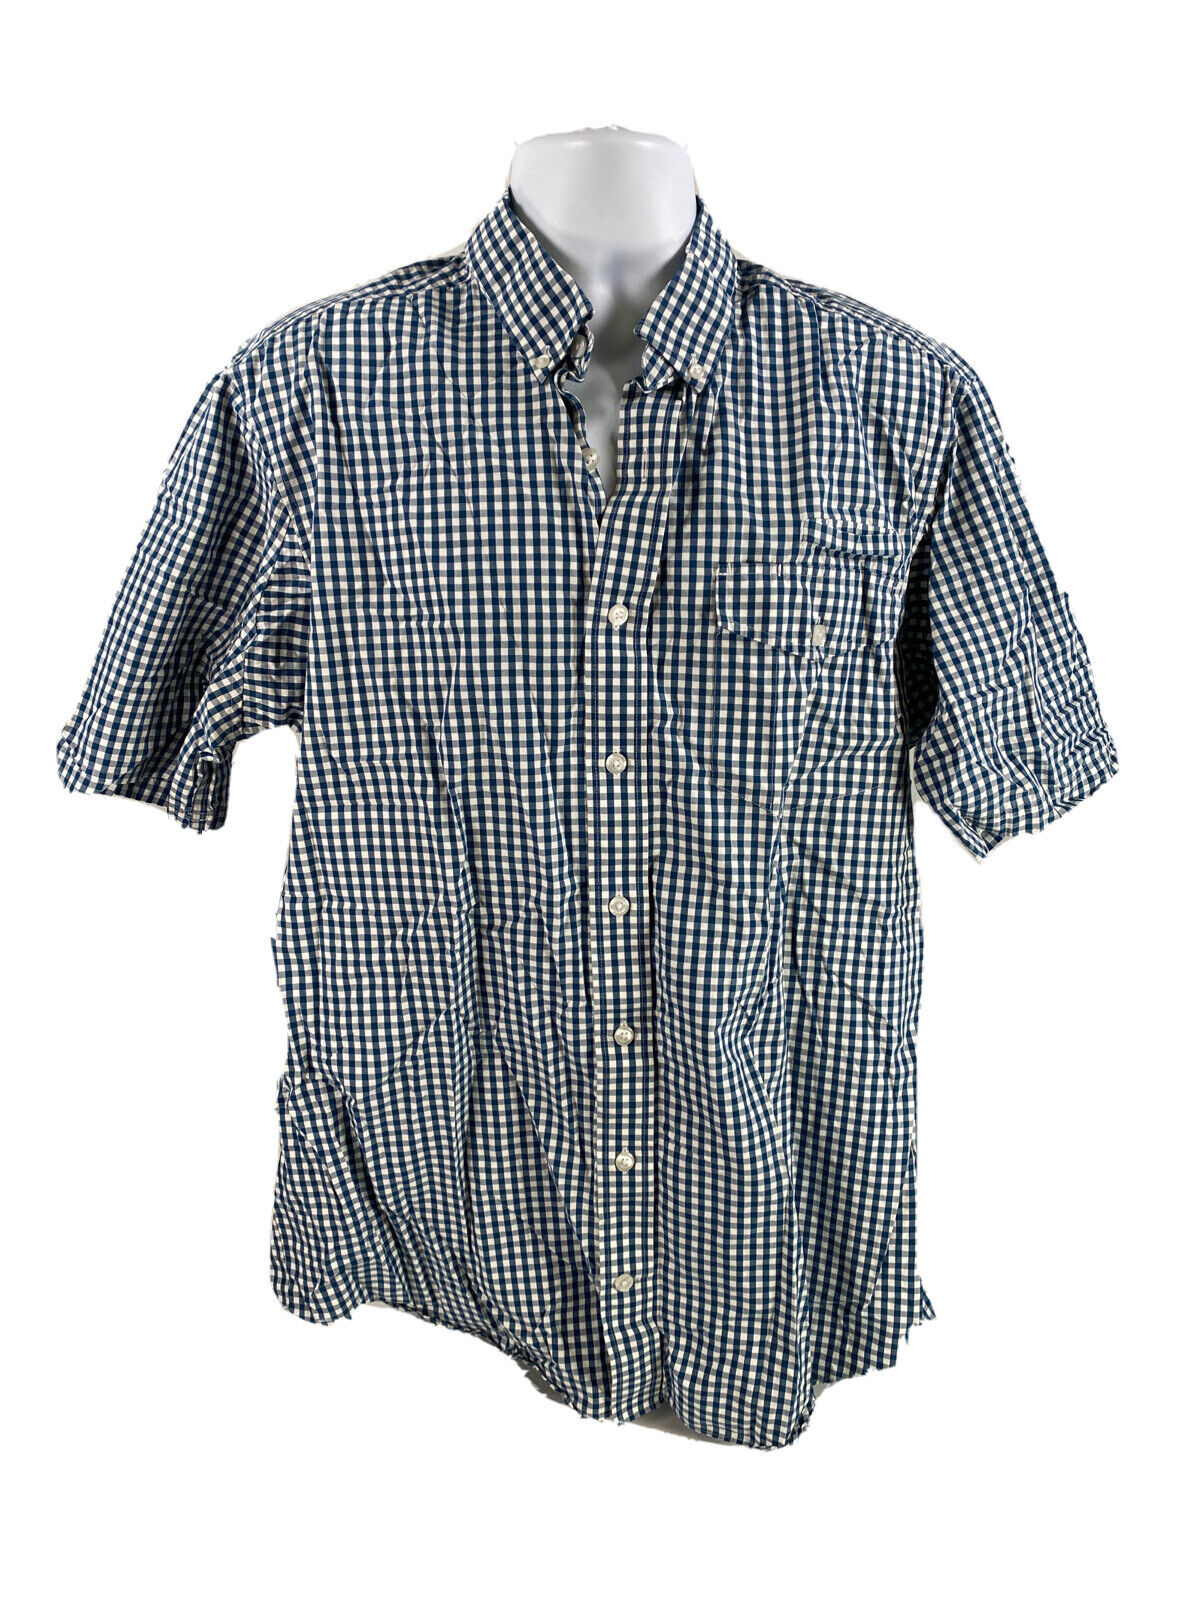 Duluth Trading Camisa con botones y estampado a cuadros azul/blanco para hombre - L Tall